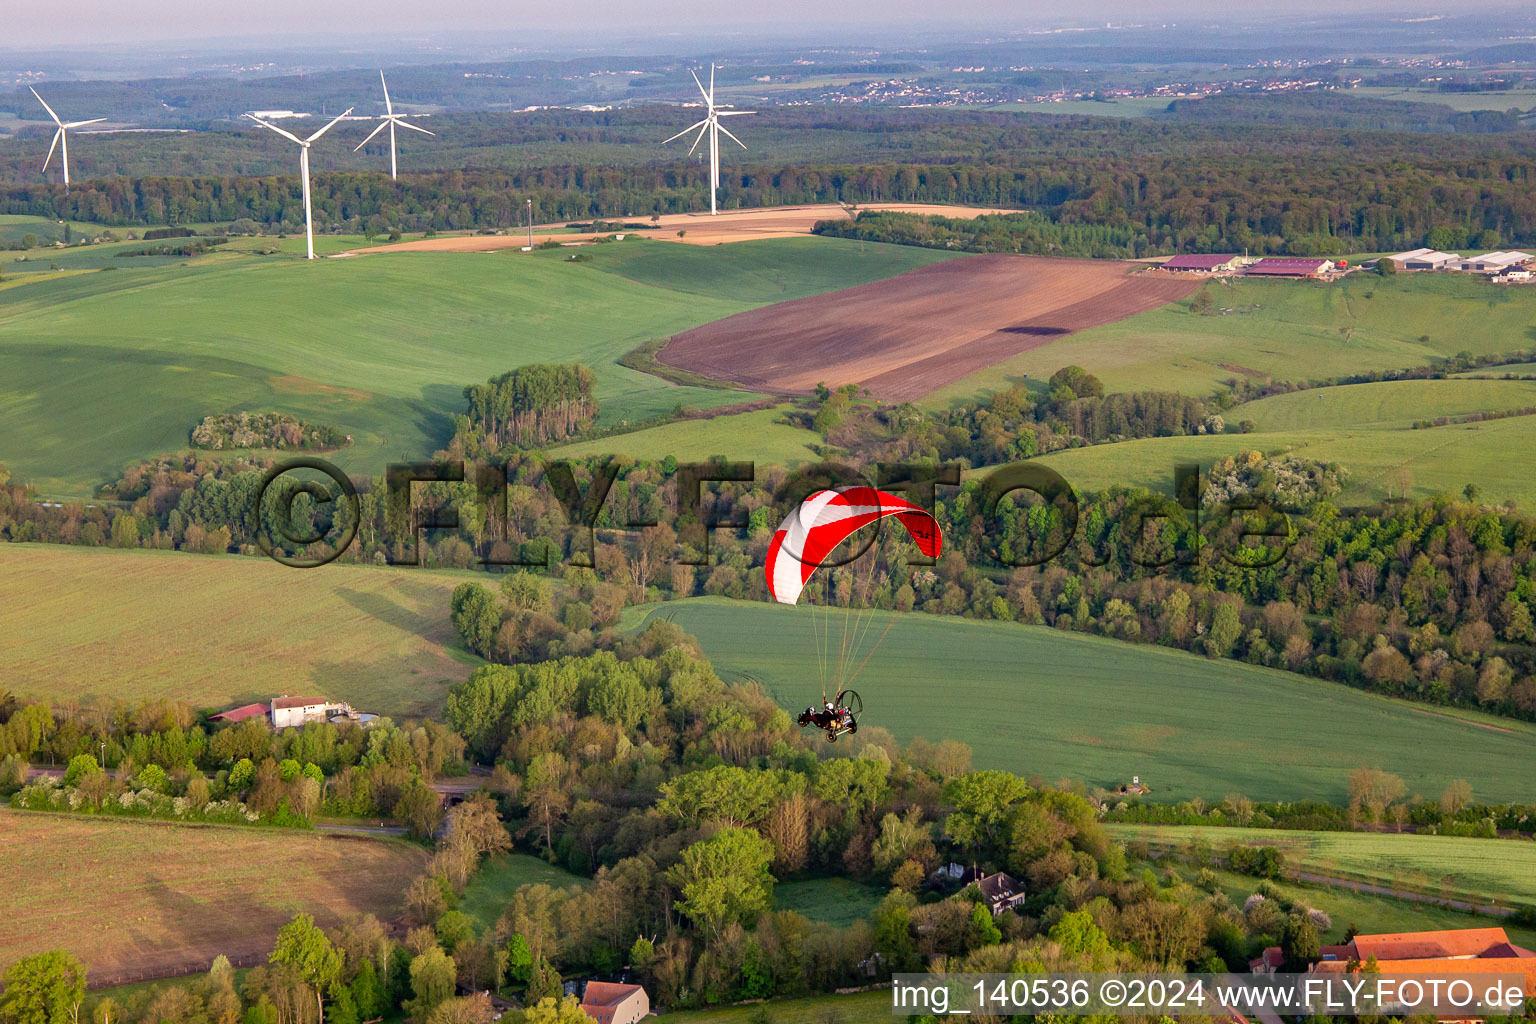 Vue aérienne de Paramoteur devant un parc éolien à Herbitzheim dans le département Bas Rhin, France